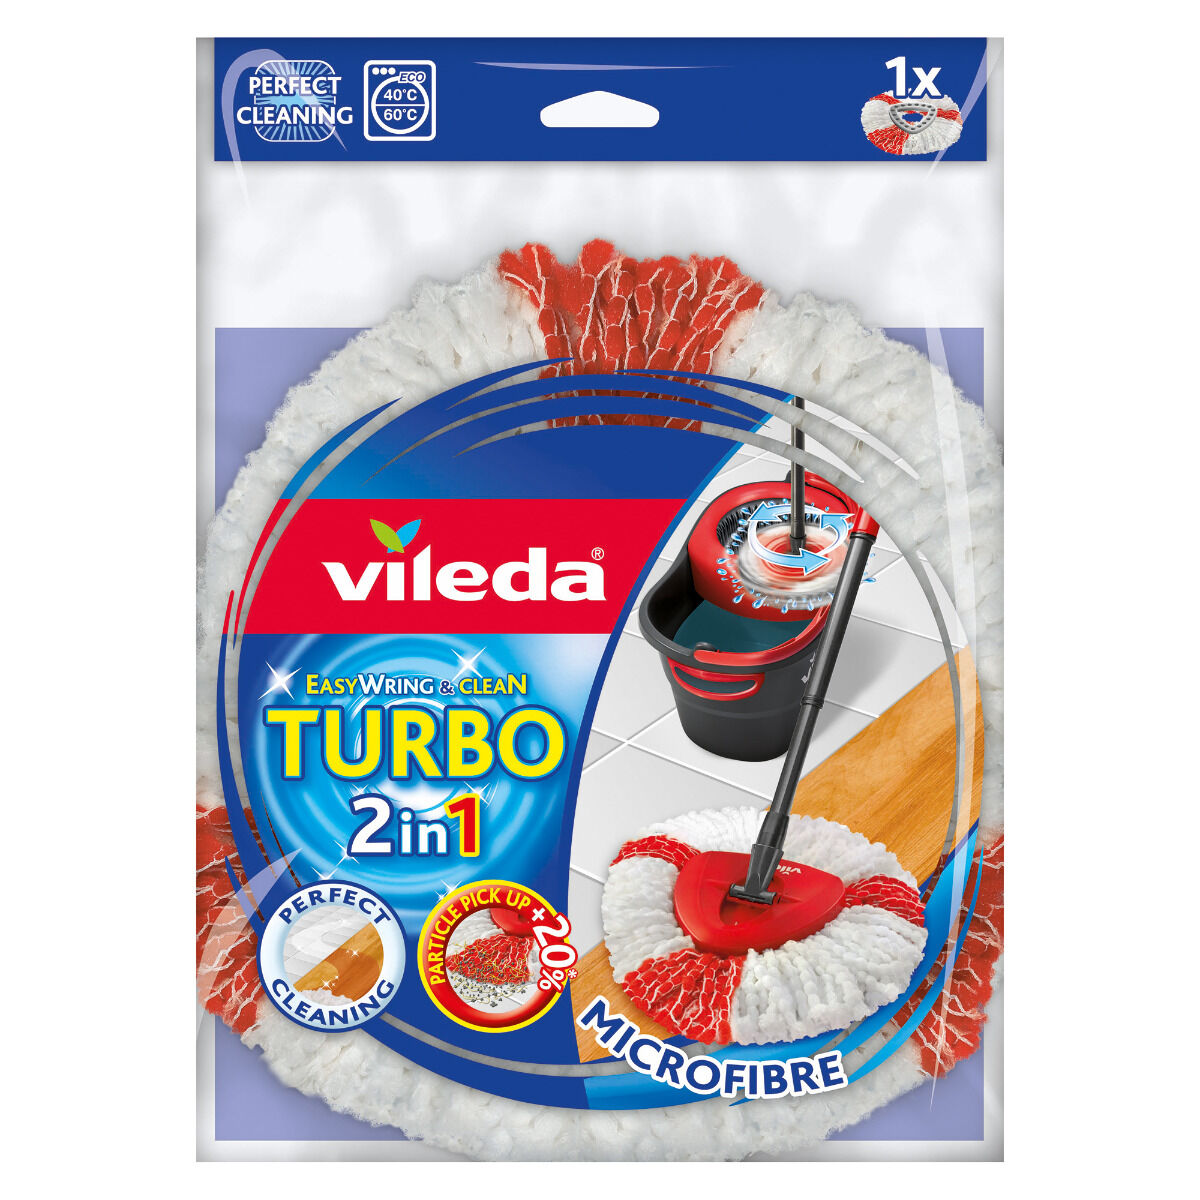 Rezerva mop Easy Wring Turbo 2in1, Vileda